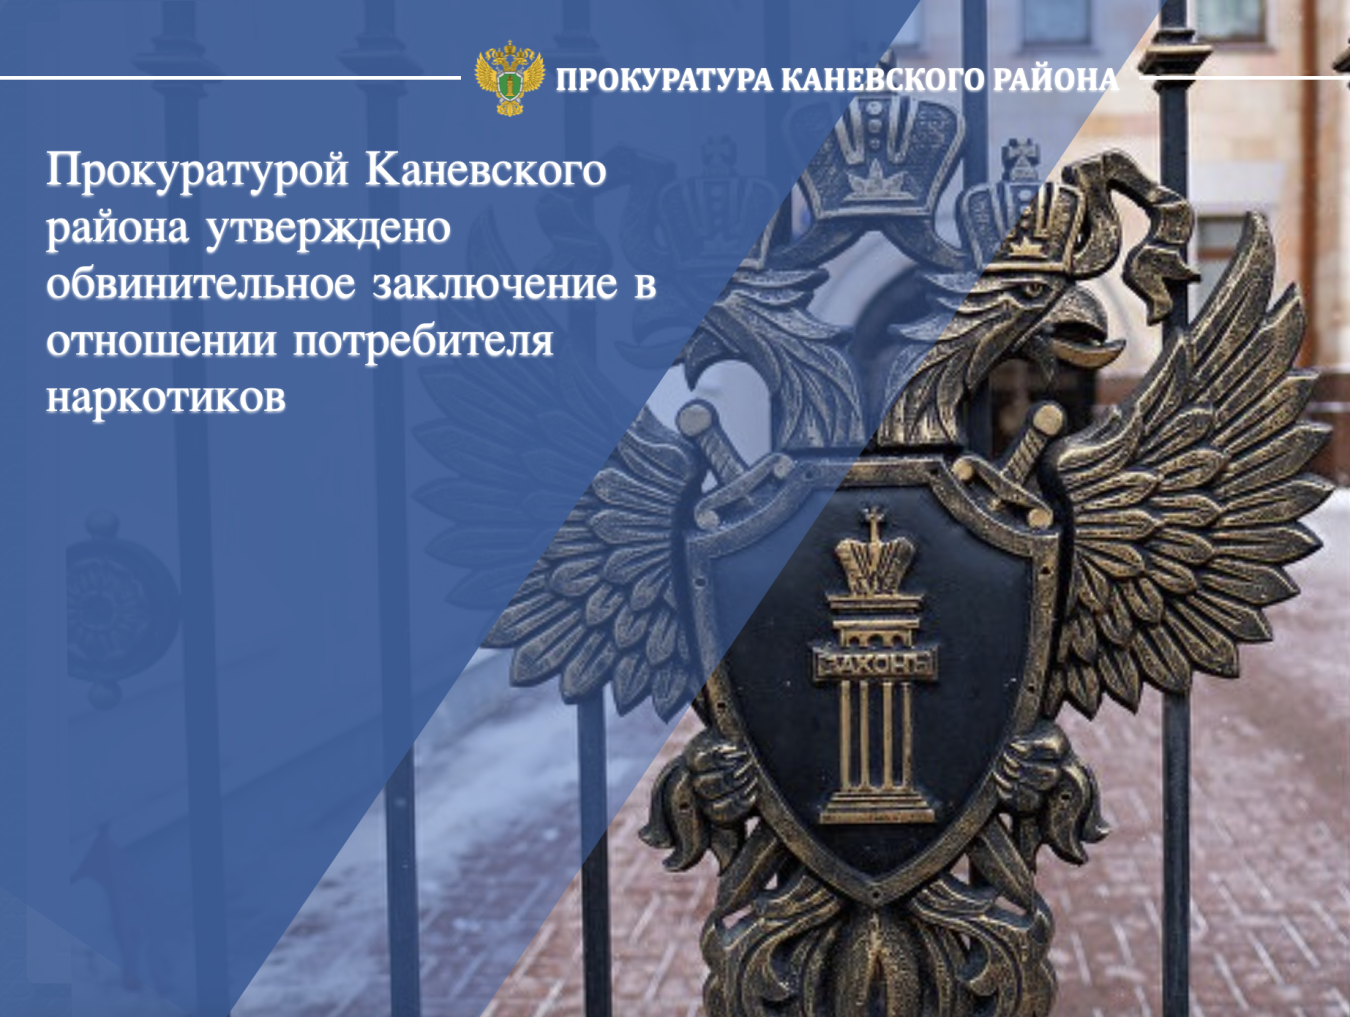 Прокуратурой Каневского района утверждено обвинительное заключение в отношении потребителя наркотиков